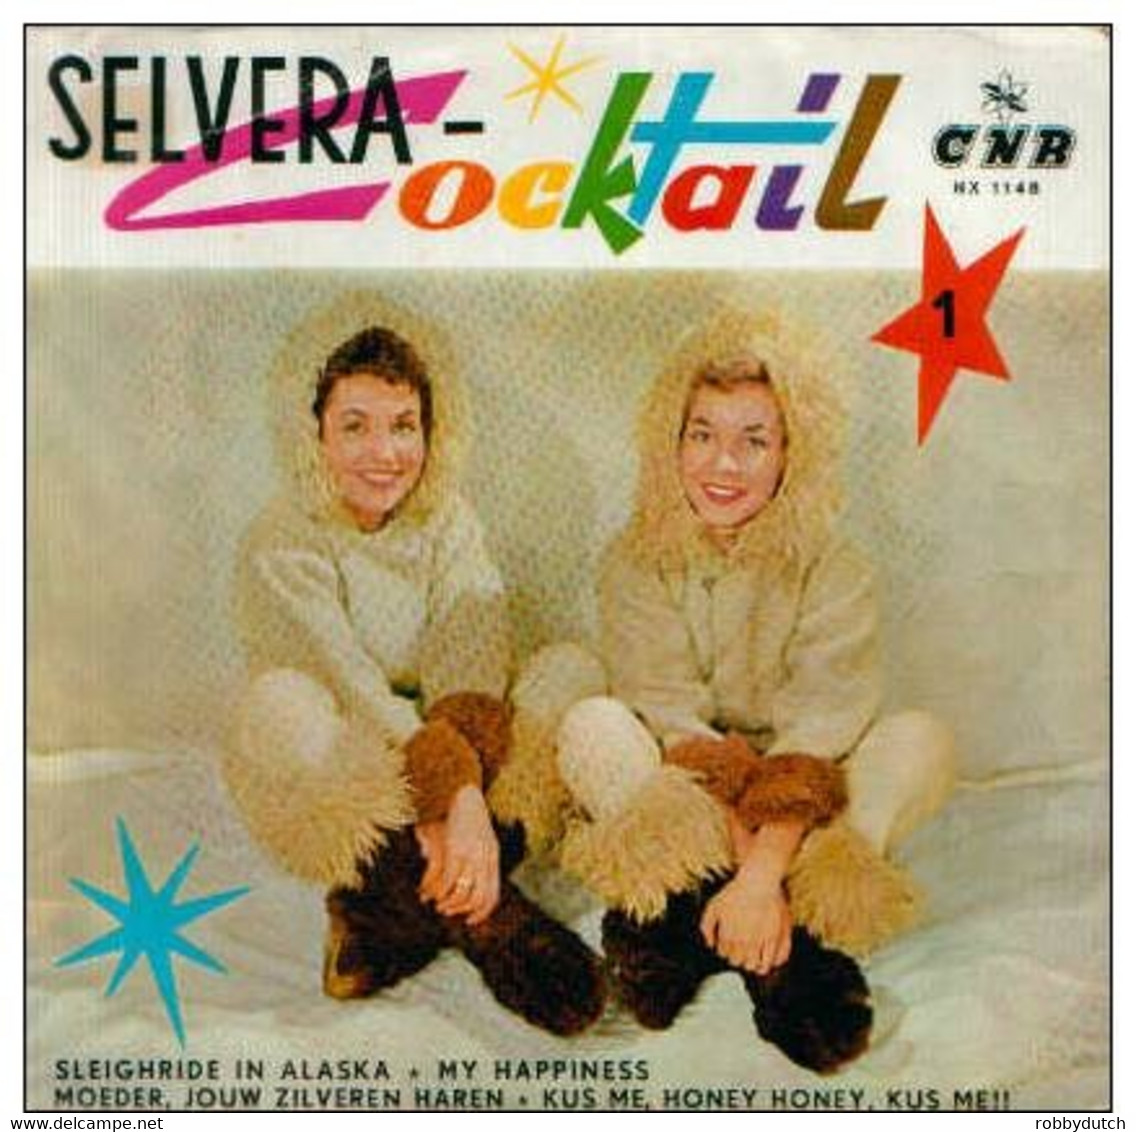 * 7" EP * DE SELVERA'S - SELVERA COCKTAIL (Holland 1960) - Sonstige - Niederländische Musik